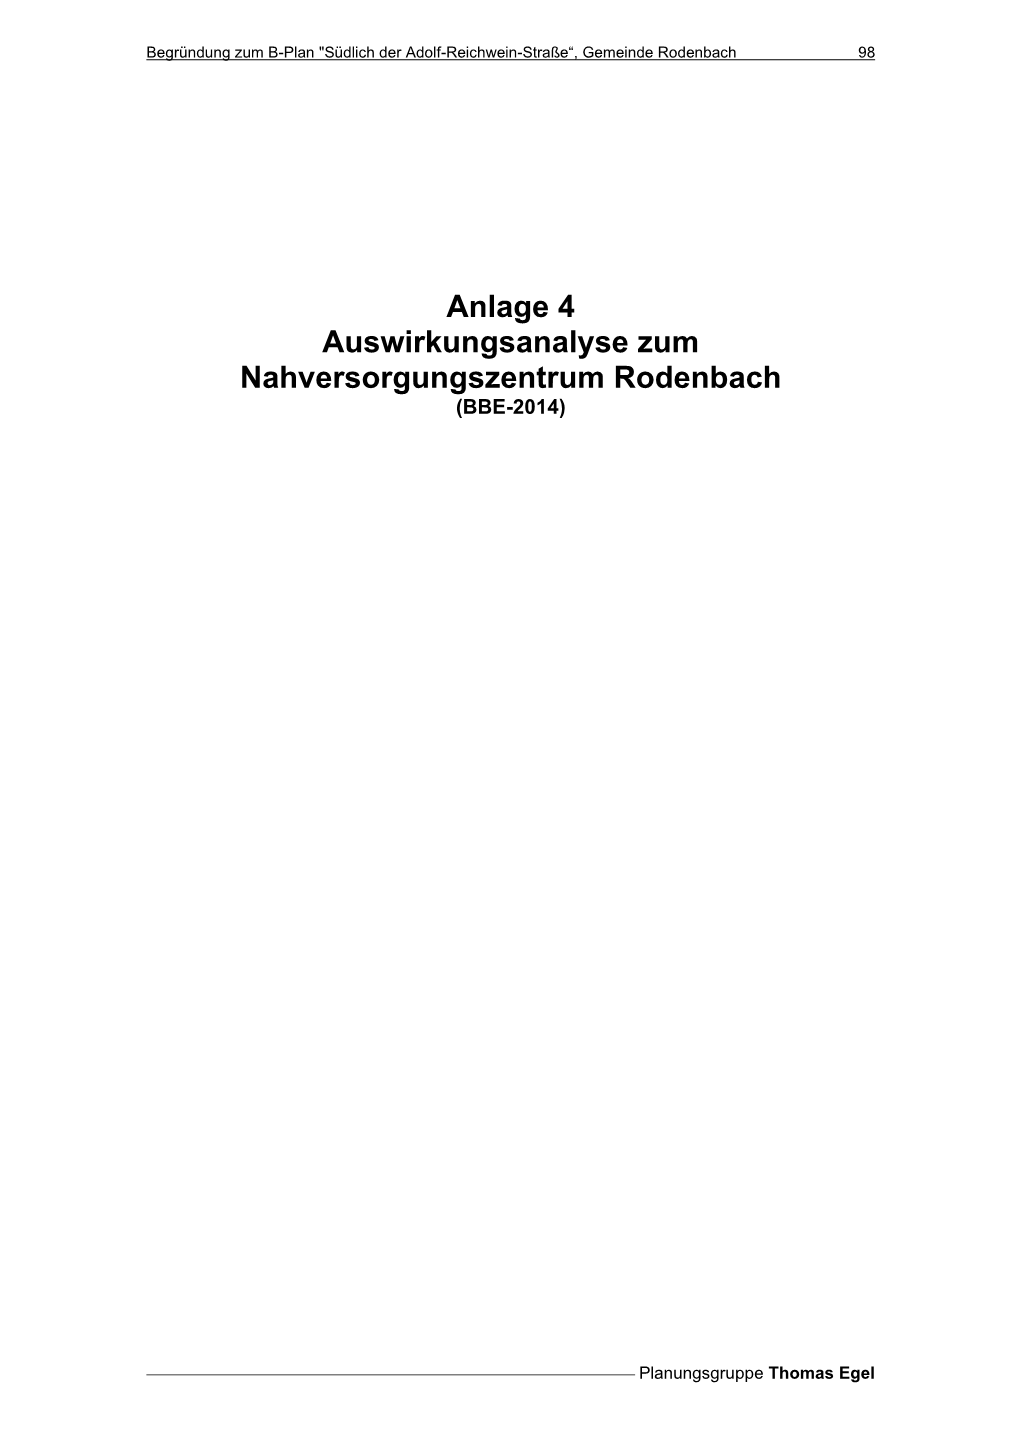 Anlage 4 Auswirkungsanalyse Zum Nahversorgungszentrum Rodenbach (BBE-2014)